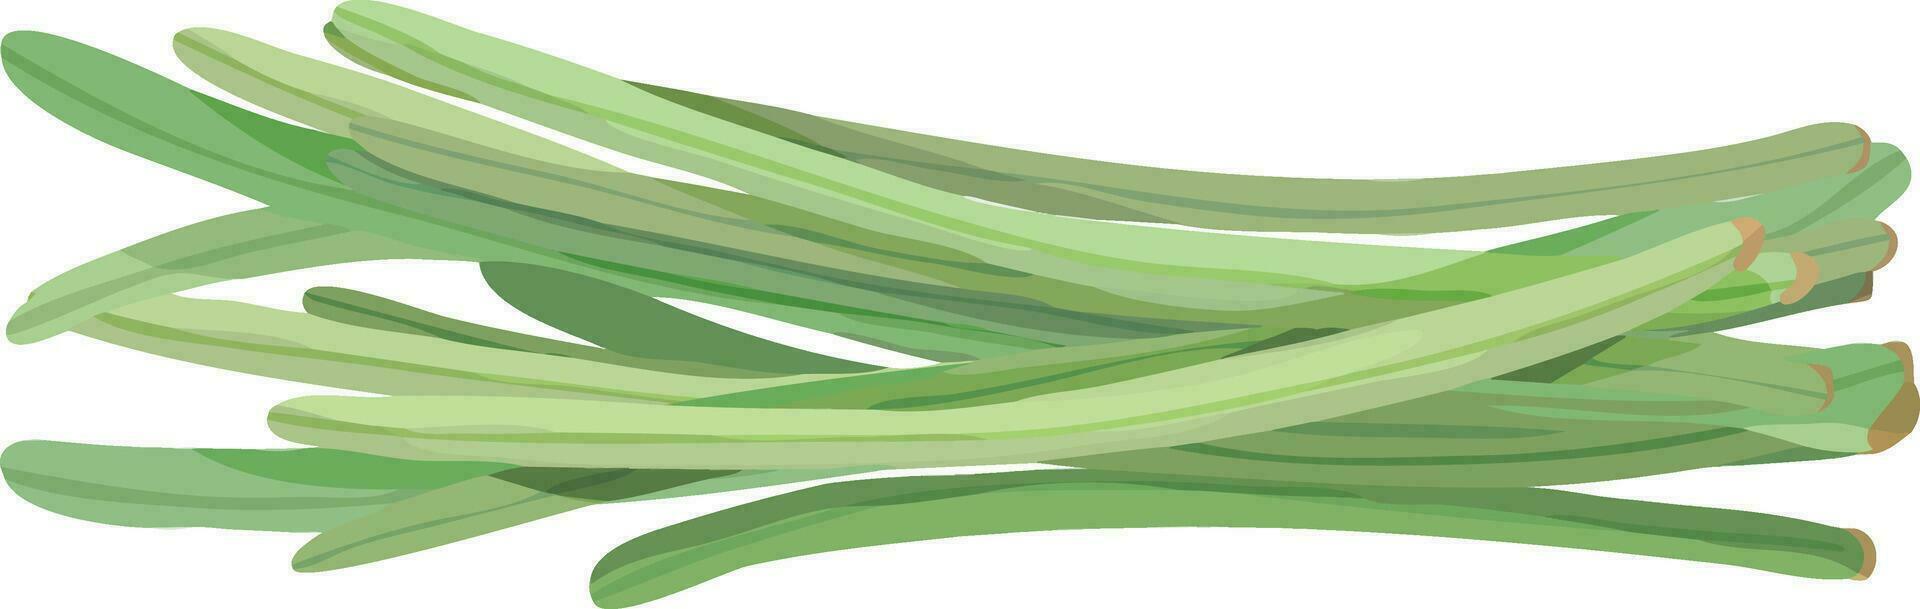 lang draad bonen. slang bonen. Aziatisch groente illustratie vector. vector